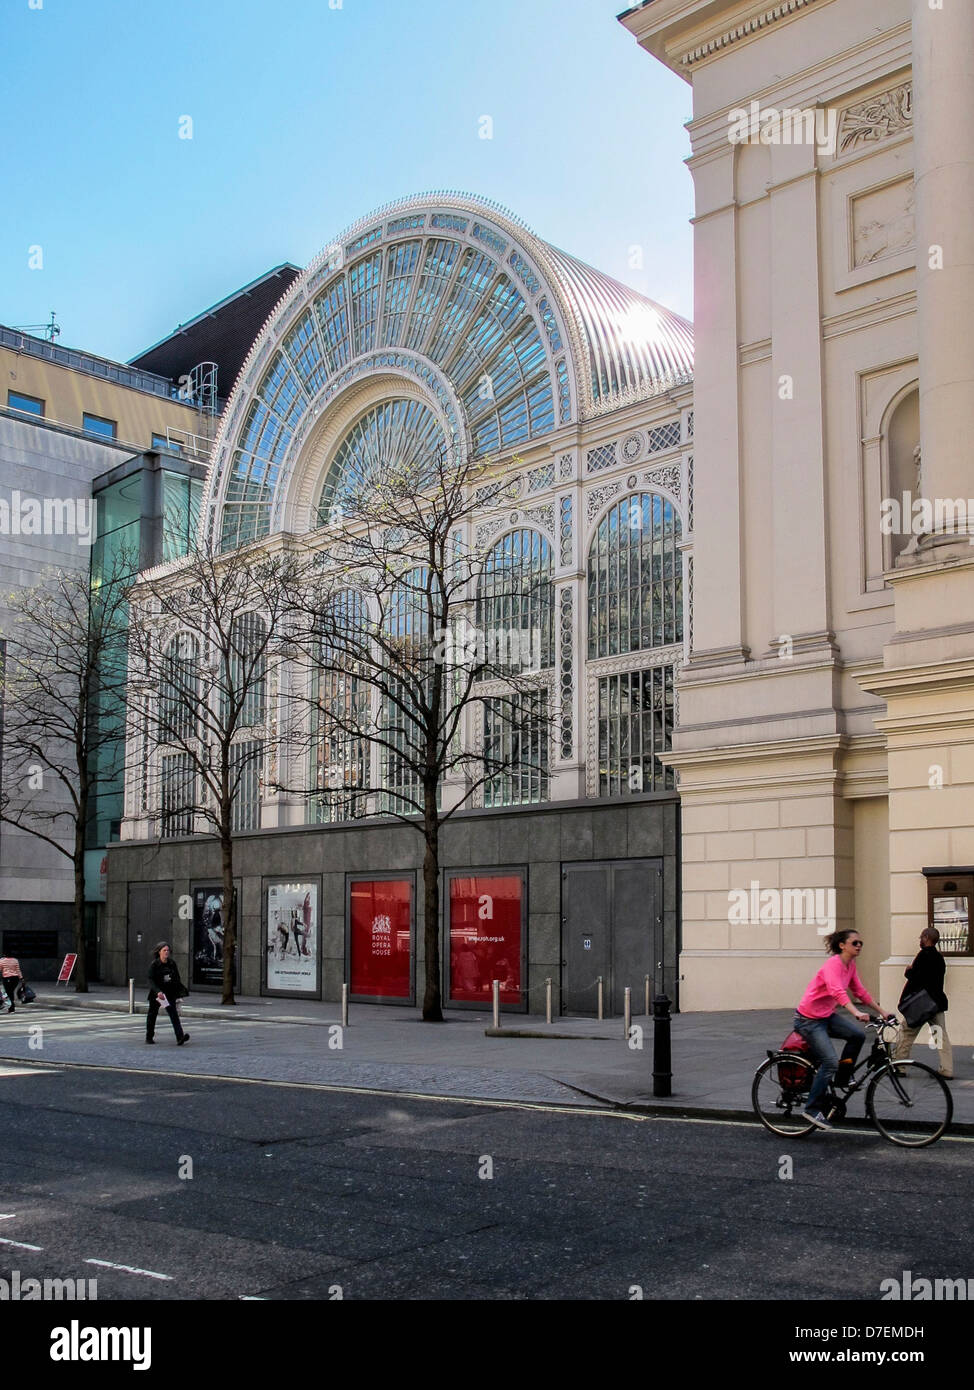 Paul Hamlyn Hall, Glass and Steel Atrium mit Zugang zum Opernhaus Auditorium. Bow Street, Covent Garden, London, Großbritannien. Stockfoto